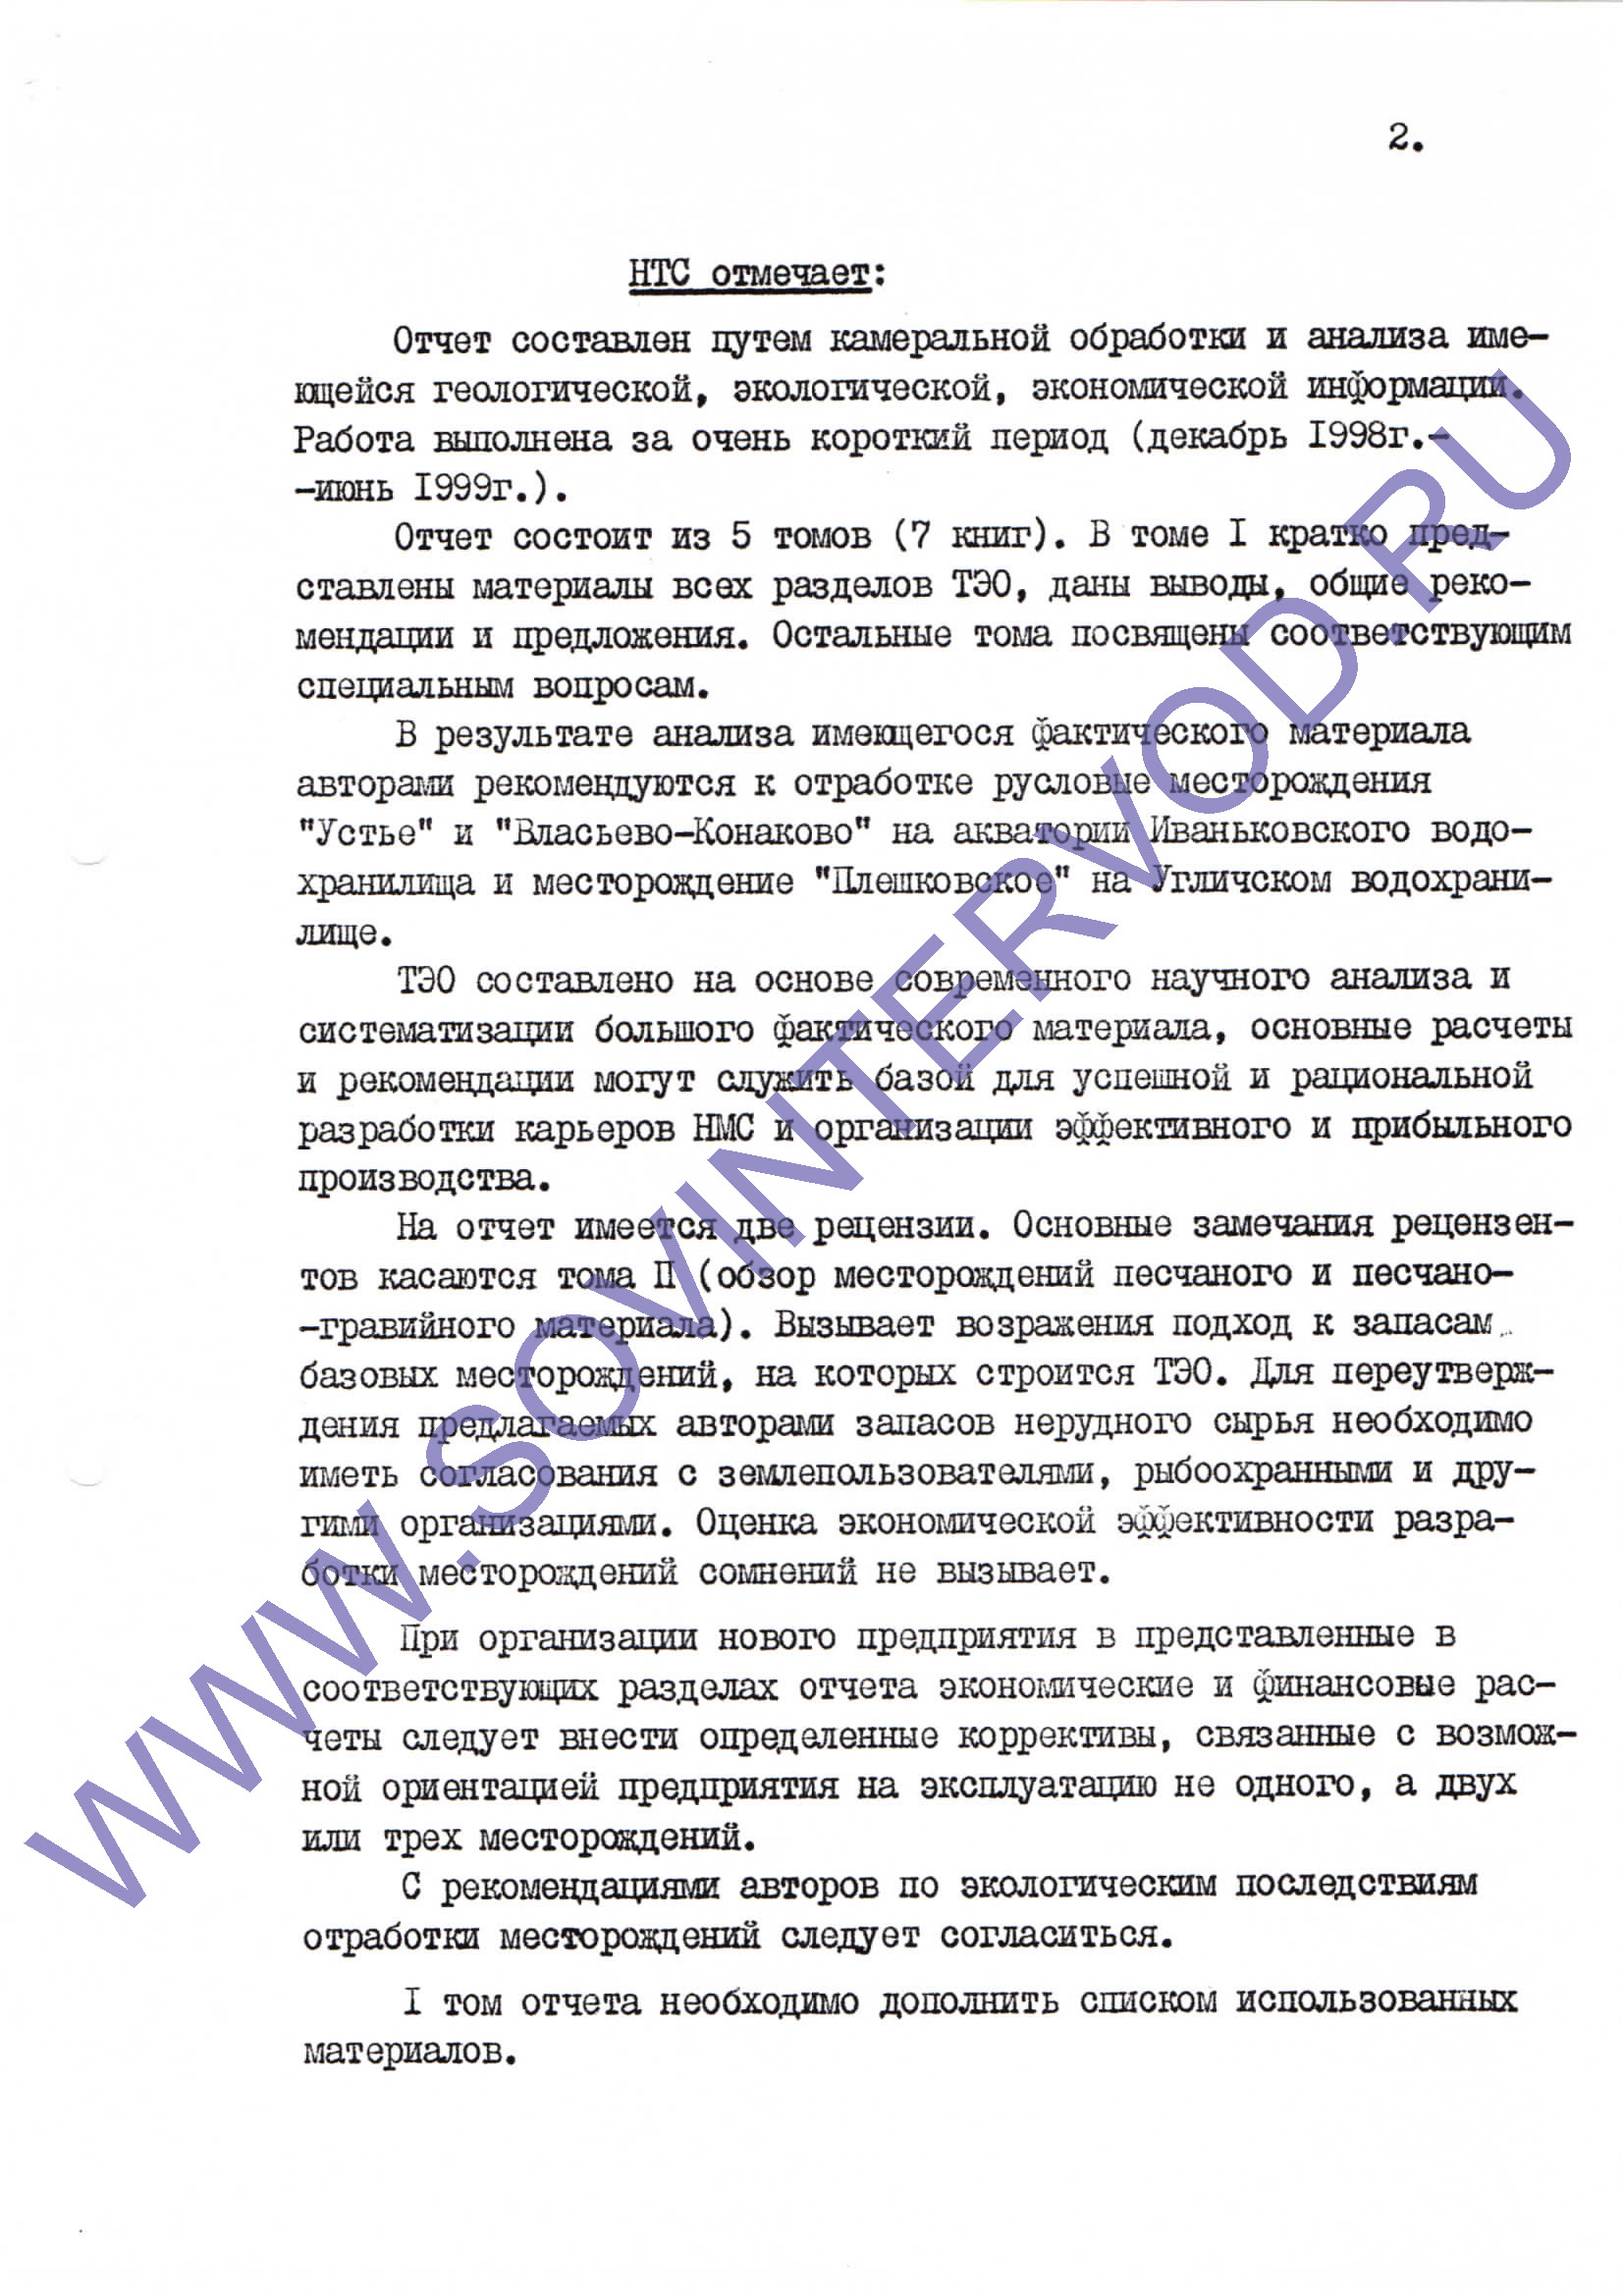 Протокол 110 заседания секции геологии, геофизики и мин. сырья от 28 12.1999